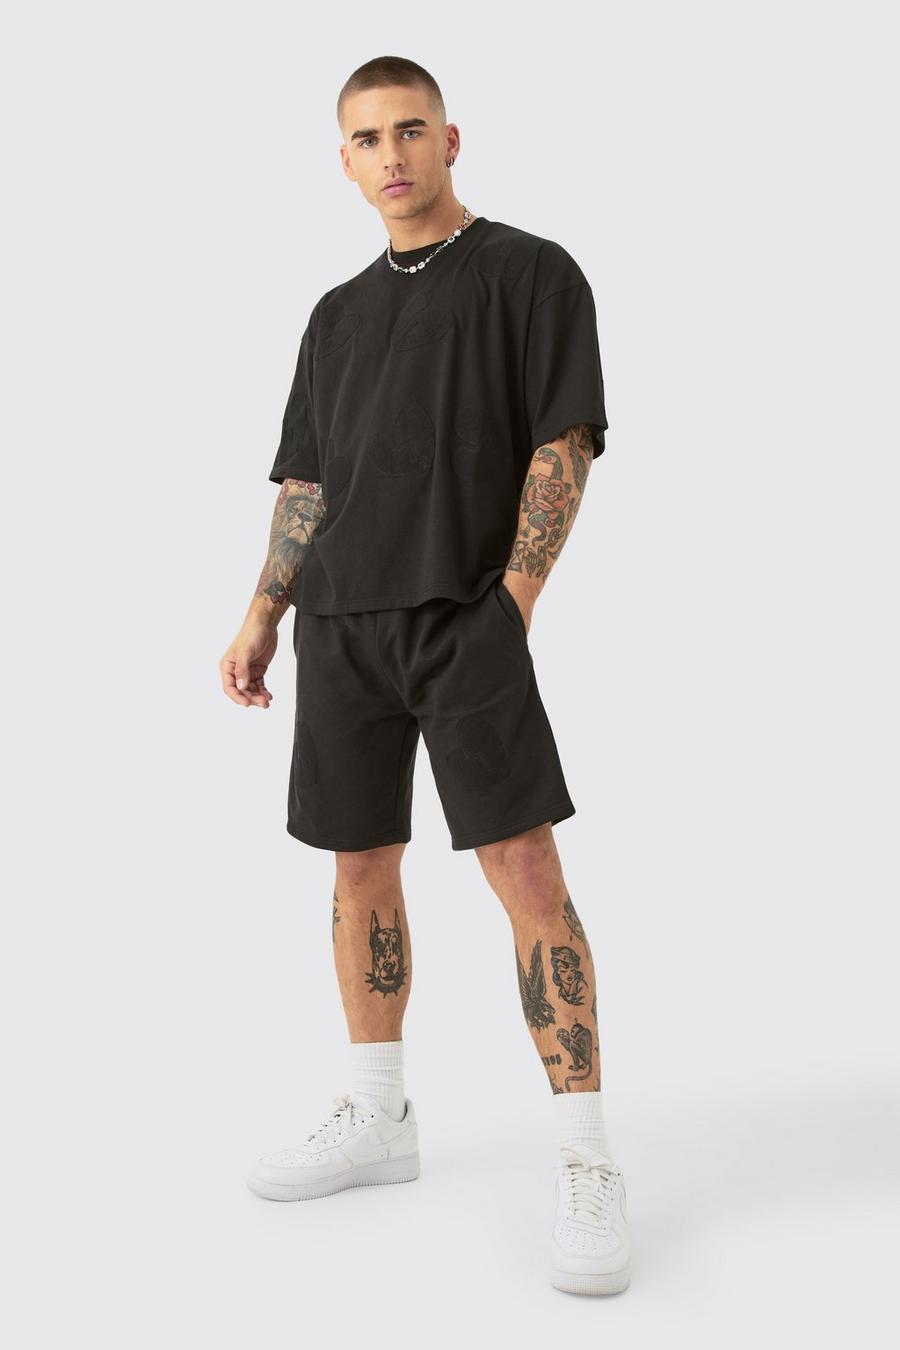 Kastiges Oversize T-Shirt mit Herz-Applikation & Shorts, Black